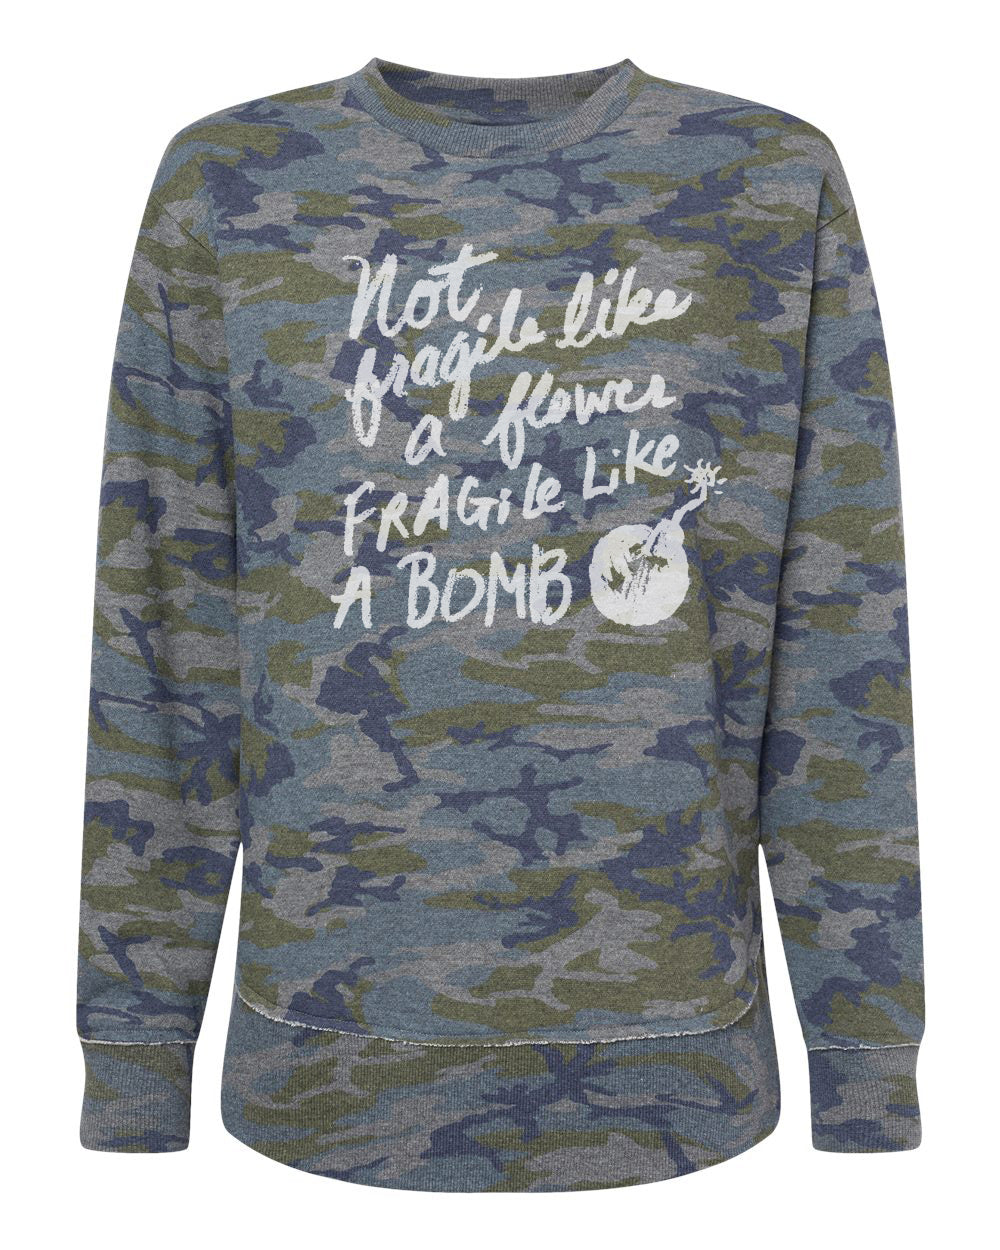 Fragile Like a Bomb : Women's Weekend Sweatshirt